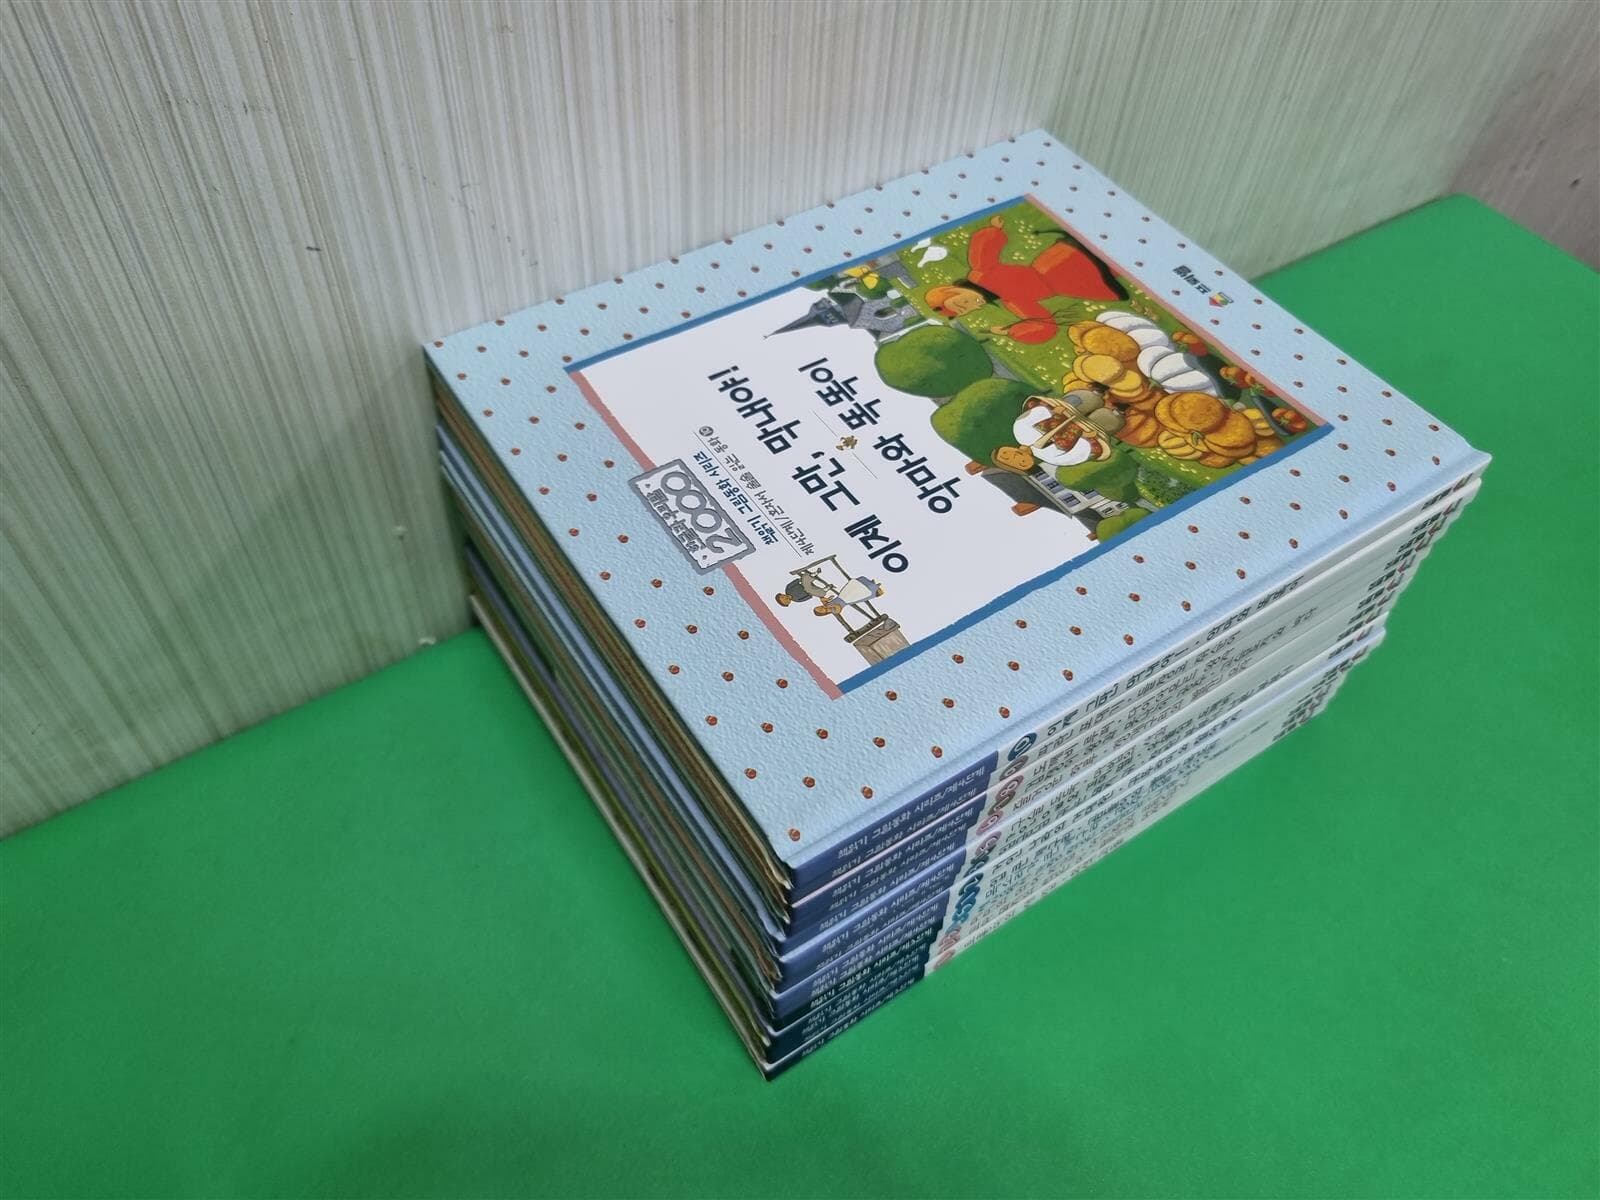 프뢰벨 책읽기 그림동화 시리즈 [3단계(5) + 4단계(10)] 총15권 전권세트 -- 상세사진 올림 최상급